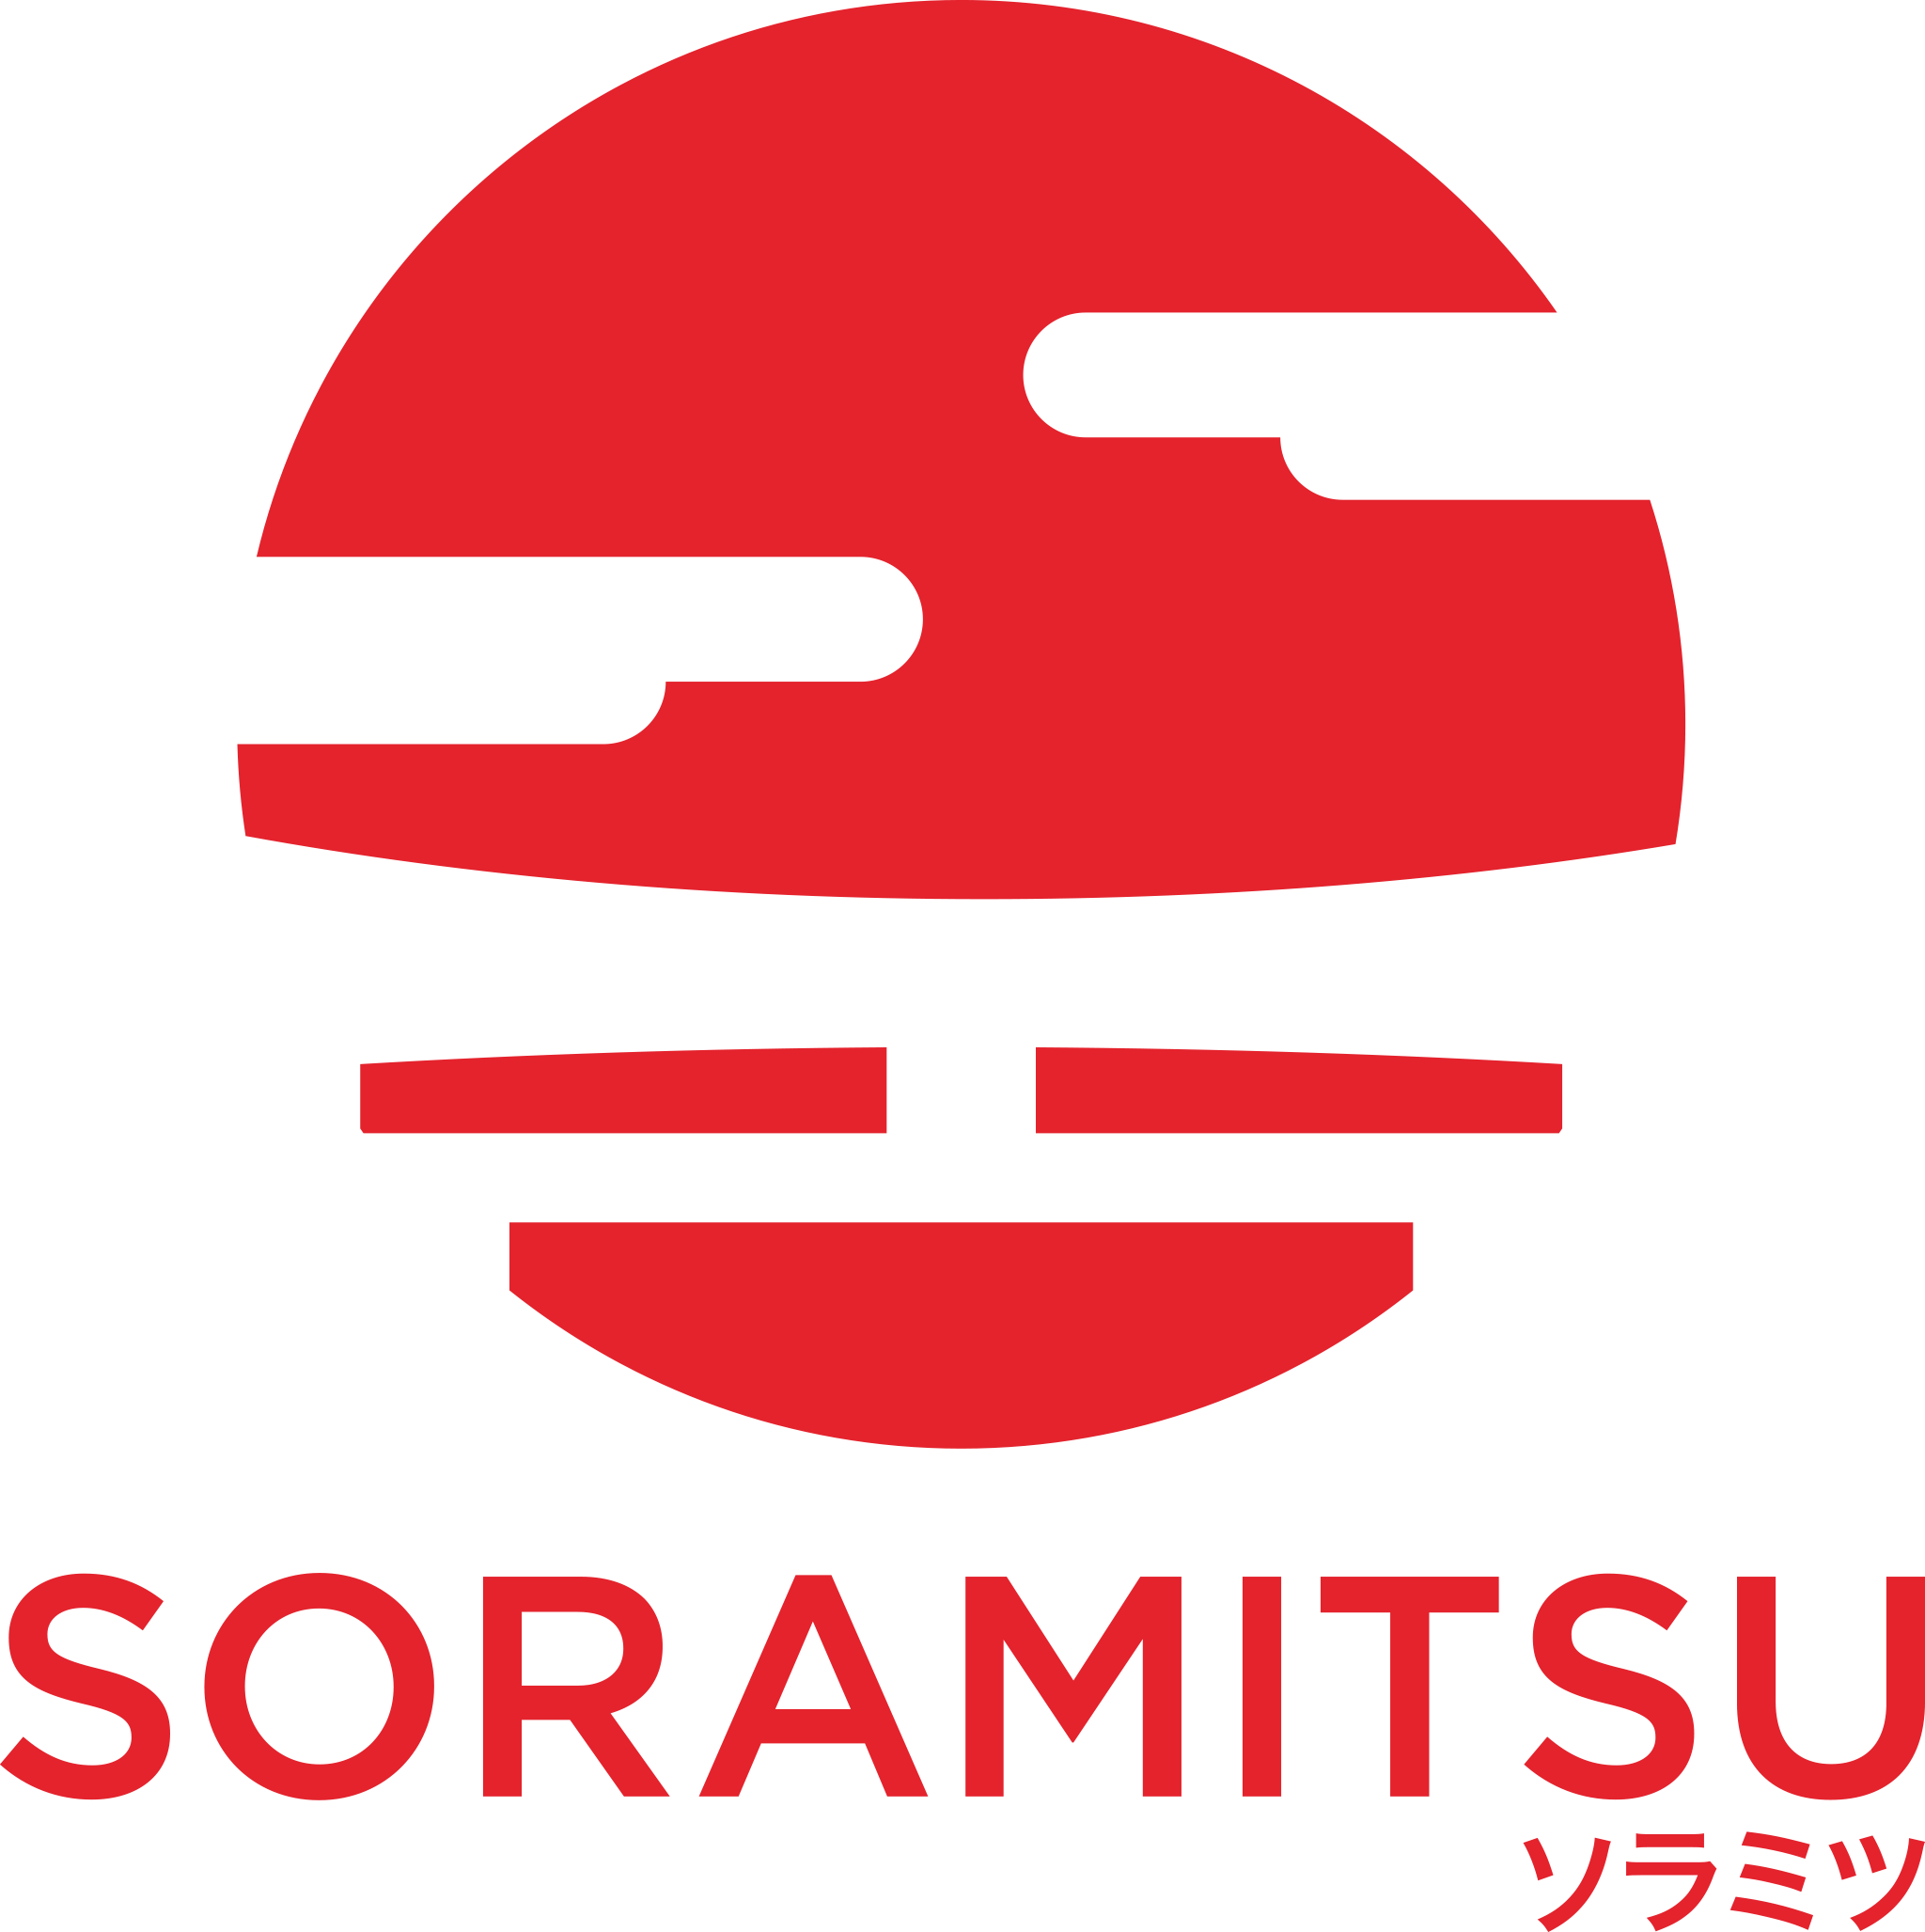 Soramitsu Co. Ltd.